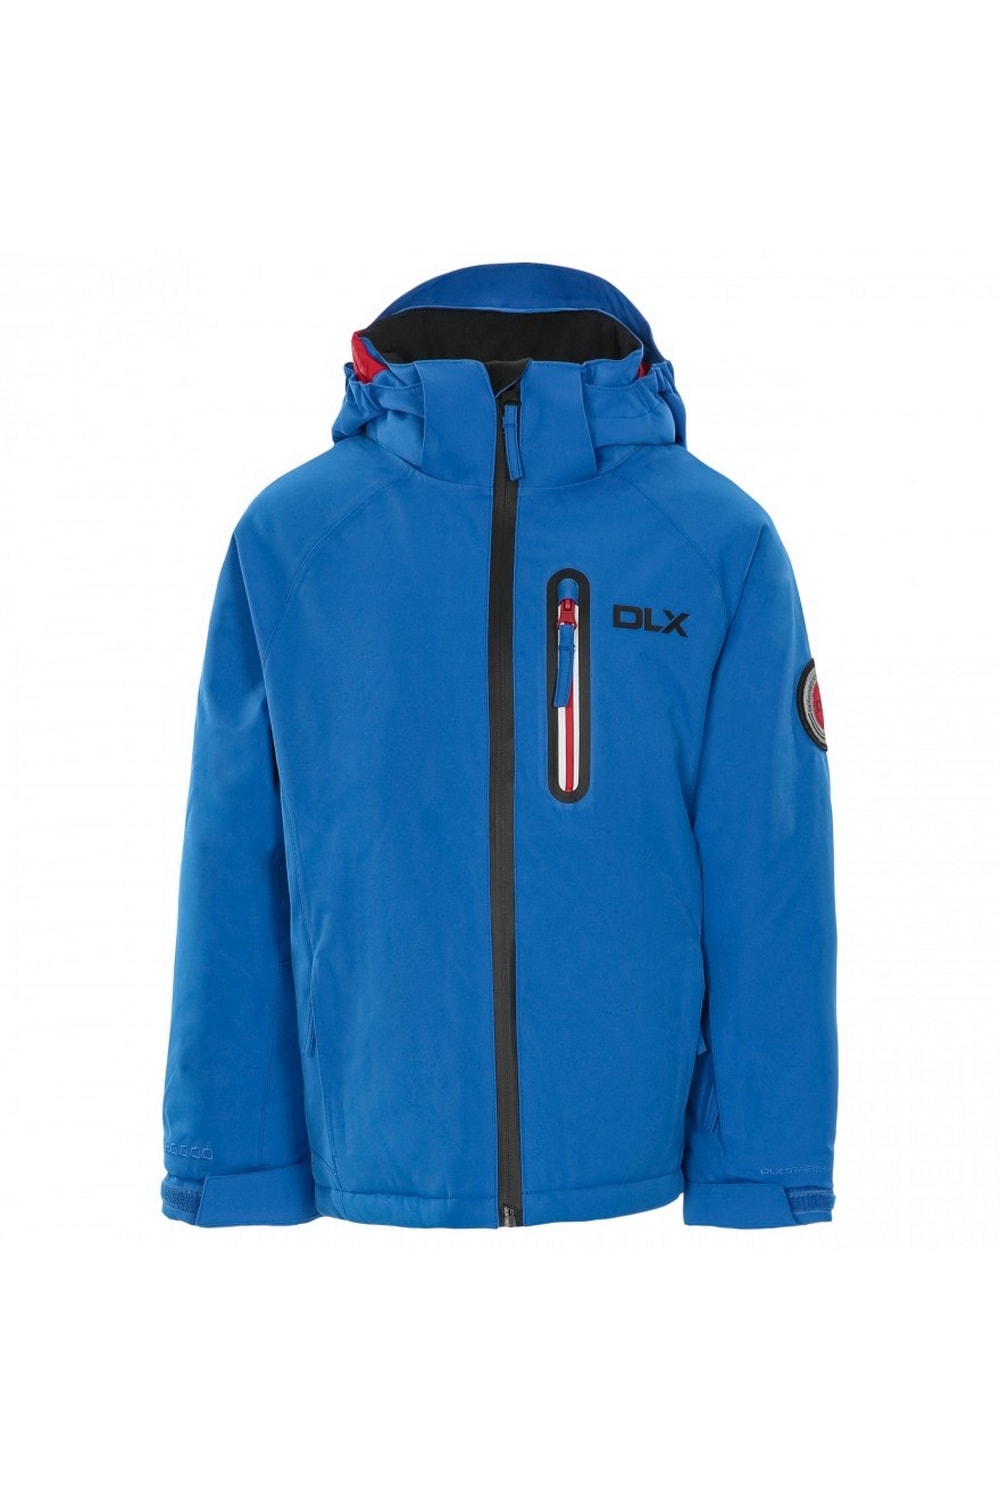 Trespass Luwin Kids DLX Ski Jacket (Blue)